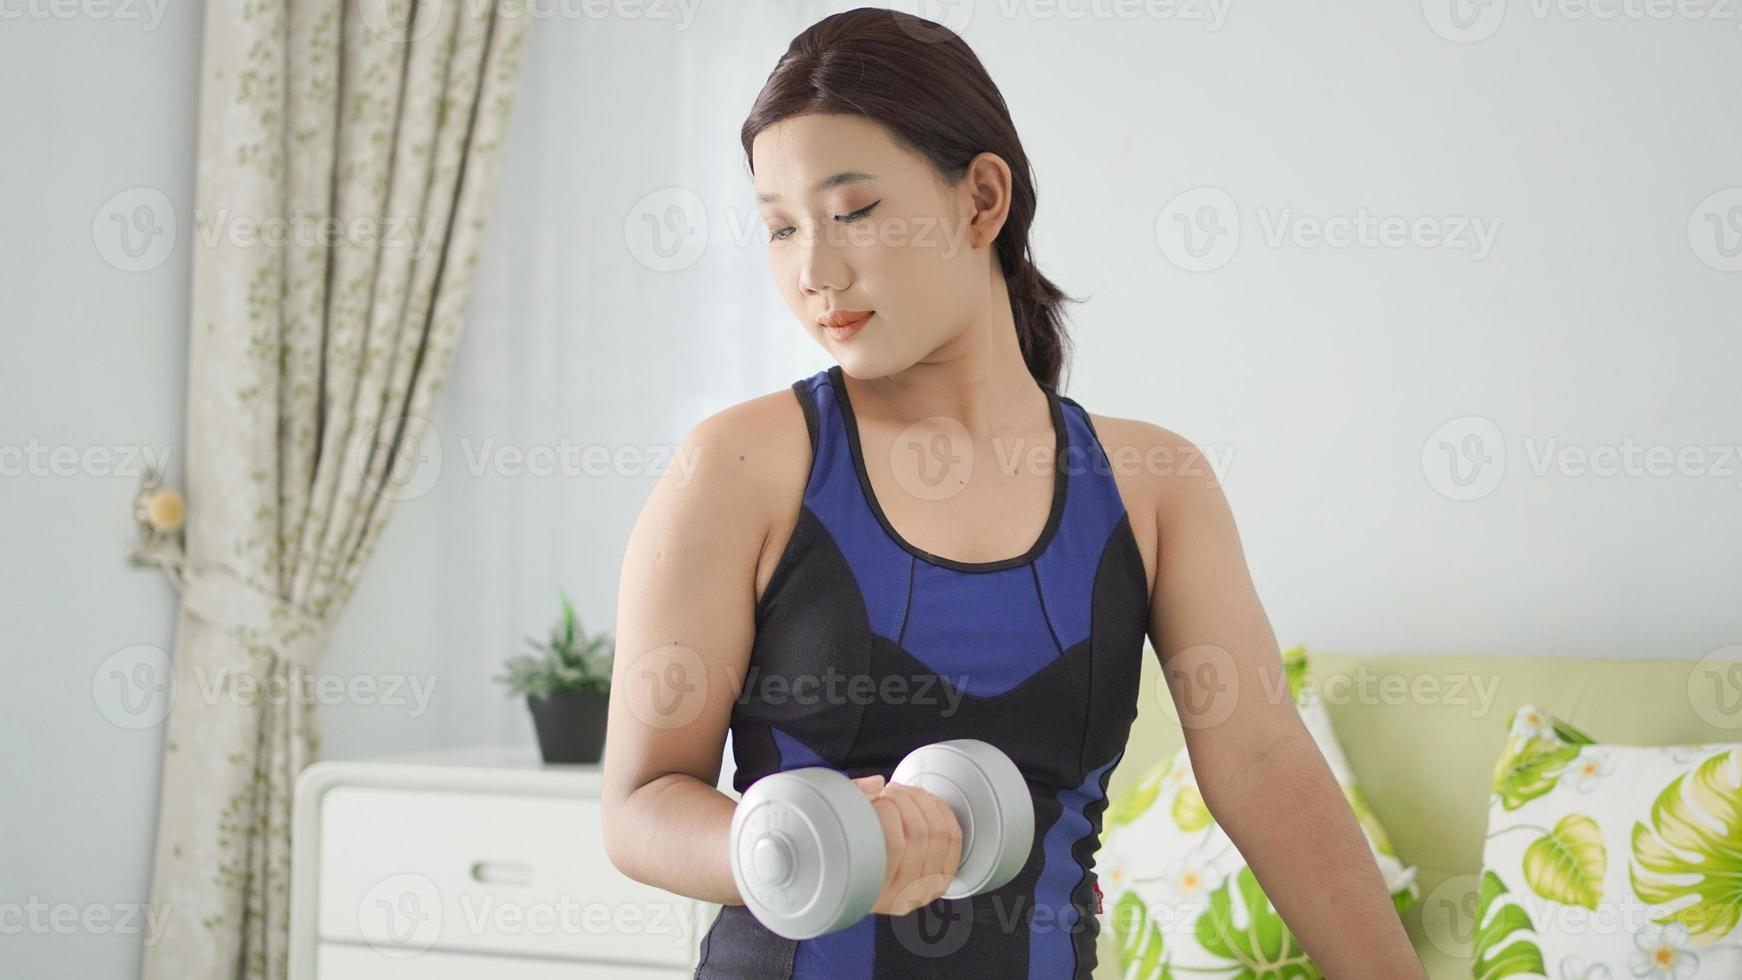 aziatische vrouw die een halter met een halve arm optilt terwijl ze thuis hurkt foto